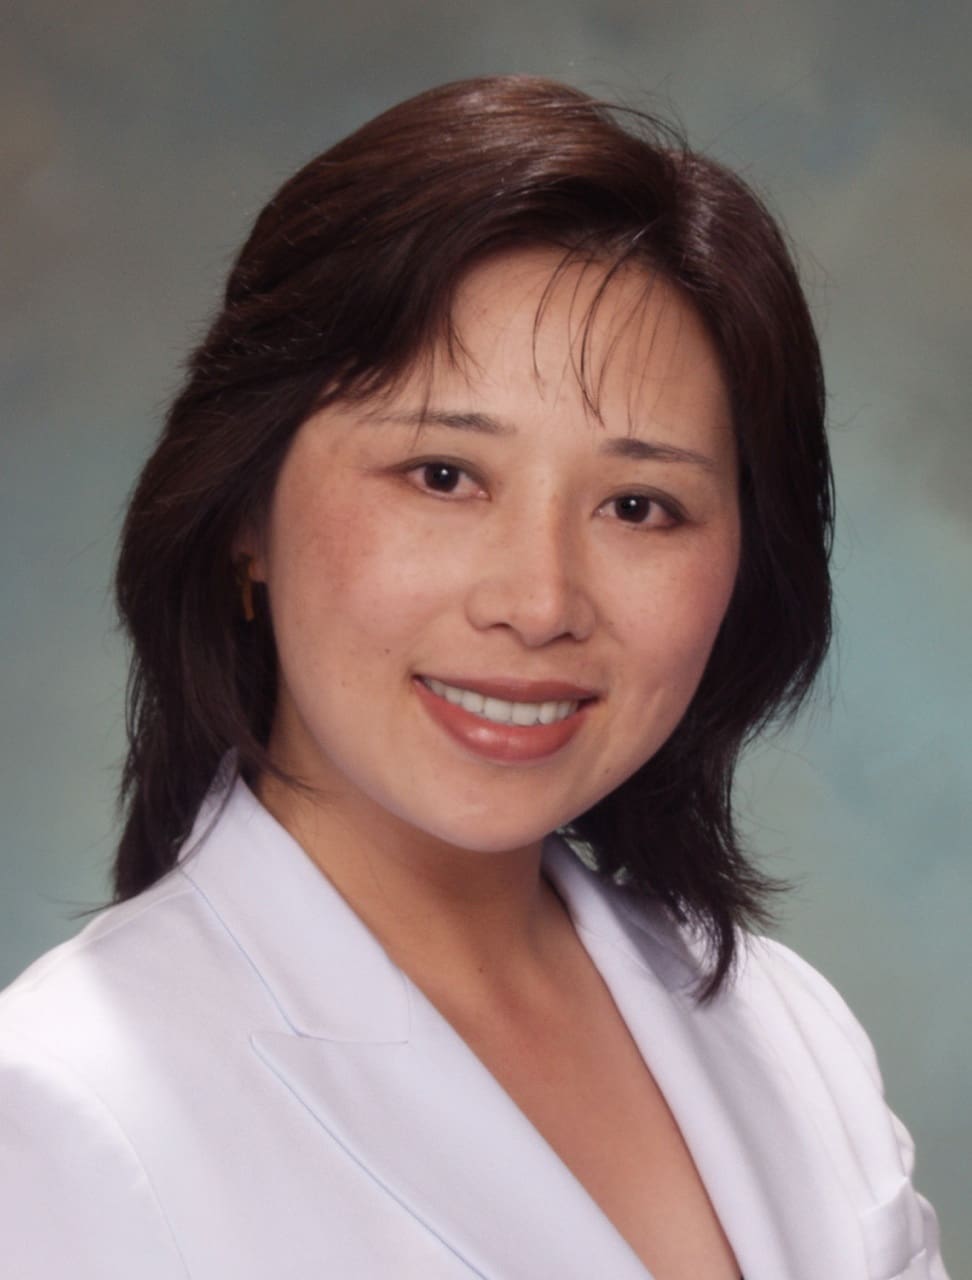 Dr. Li Jin Voepel